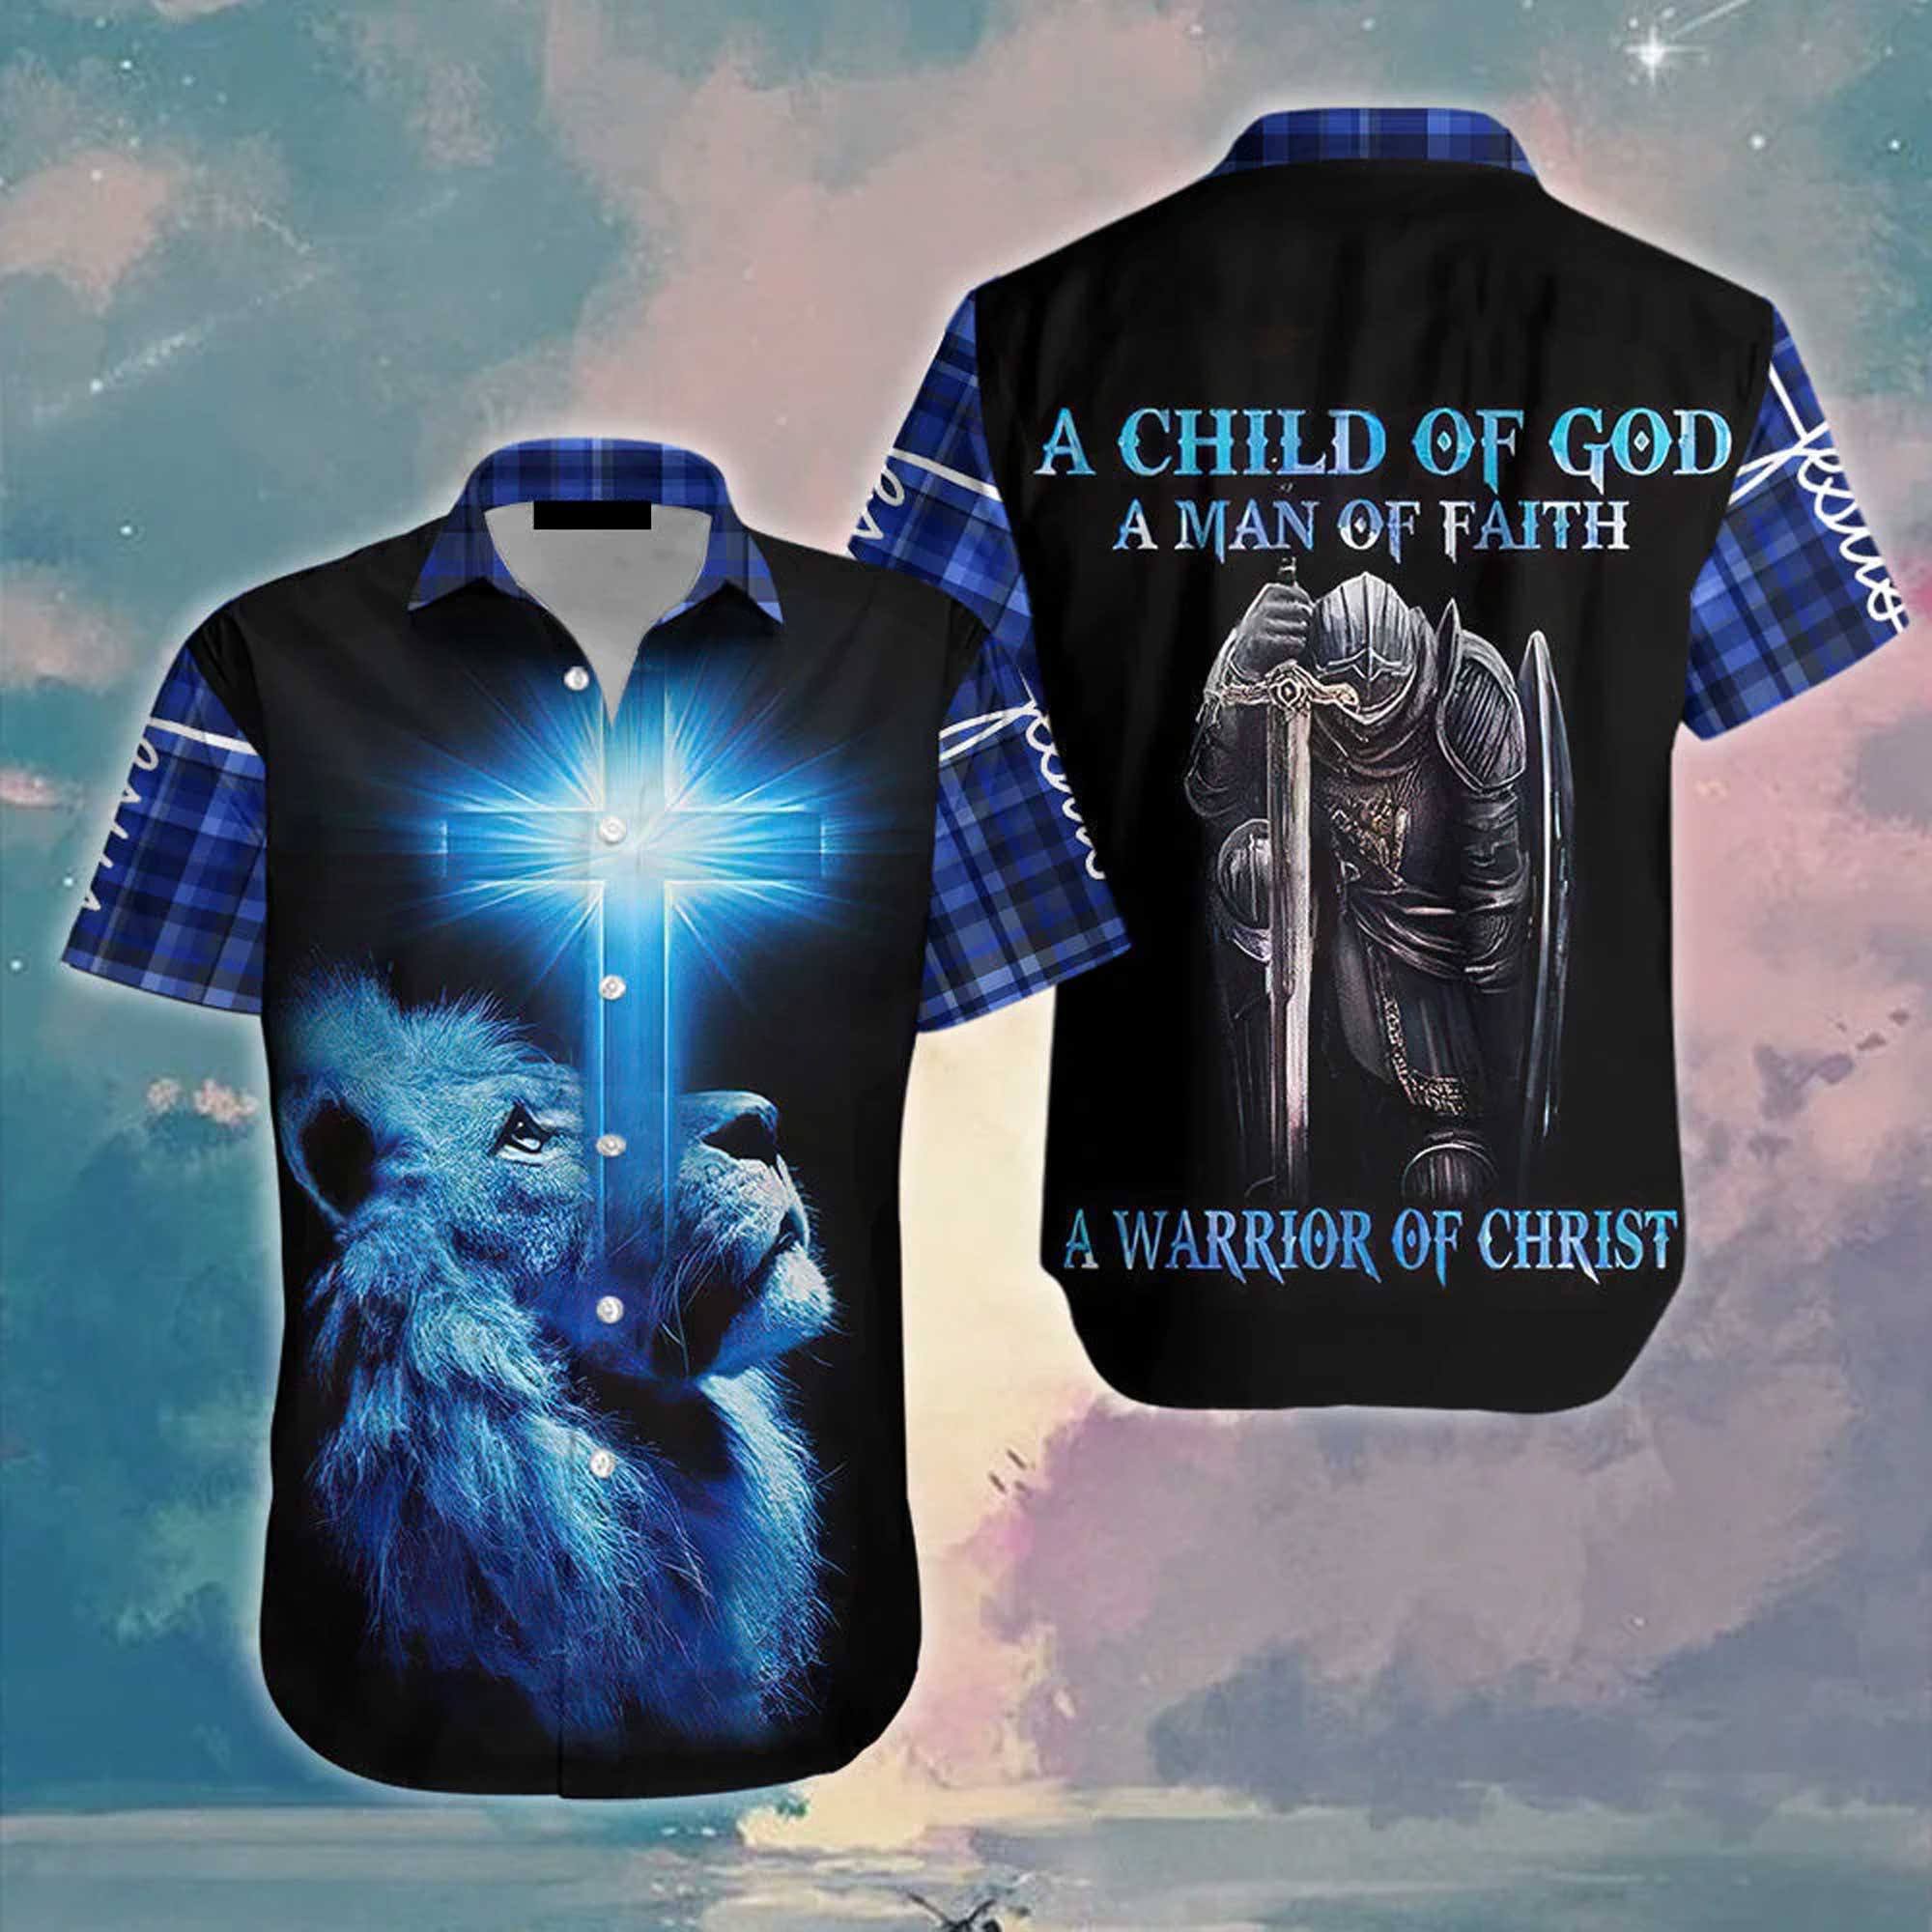 Jesus Hawaiian Shirt, God, Lion, Cross, Knight, A Child Of God A Man Of Faith Aloha Shirt - Summer Gift For Christians, Men, Women